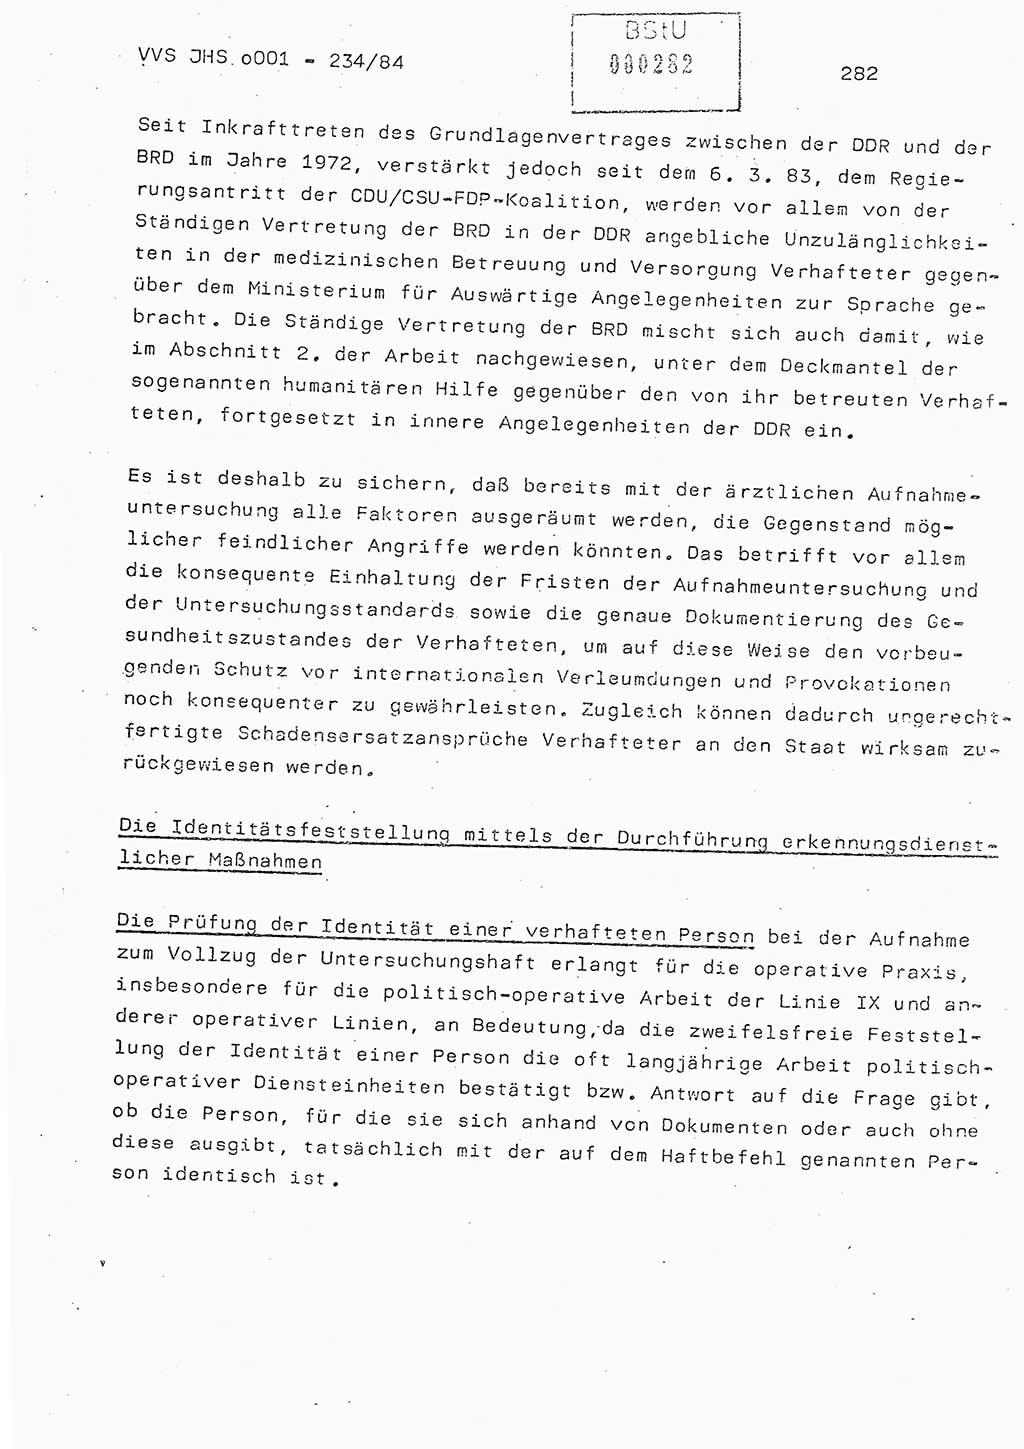 Dissertation Oberst Siegfried Rataizick (Abt. ⅩⅣ), Oberstleutnant Volkmar Heinz (Abt. ⅩⅣ), Oberstleutnant Werner Stein (HA Ⅸ), Hauptmann Heinz Conrad (JHS), Ministerium für Staatssicherheit (MfS) [Deutsche Demokratische Republik (DDR)], Juristische Hochschule (JHS), Vertrauliche Verschlußsache (VVS) o001-234/84, Potsdam 1984, Seite 282 (Diss. MfS DDR JHS VVS o001-234/84 1984, S. 282)